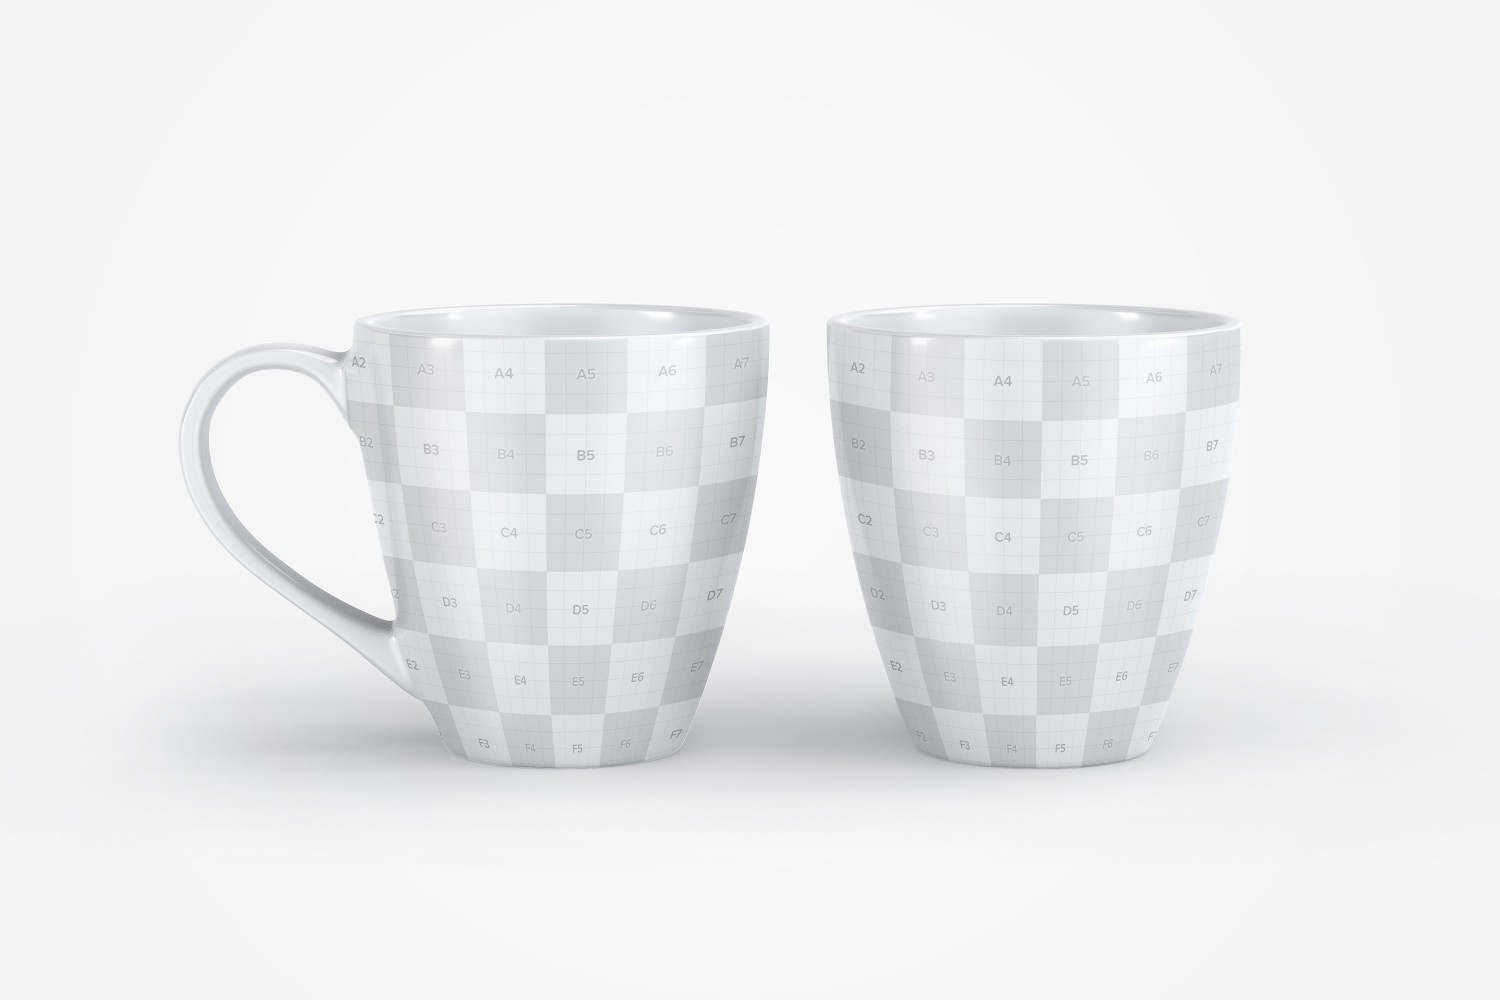 宽口马克杯陶瓷杯图案设计展示素材库精选v10 Mug Mockup 10插图(1)